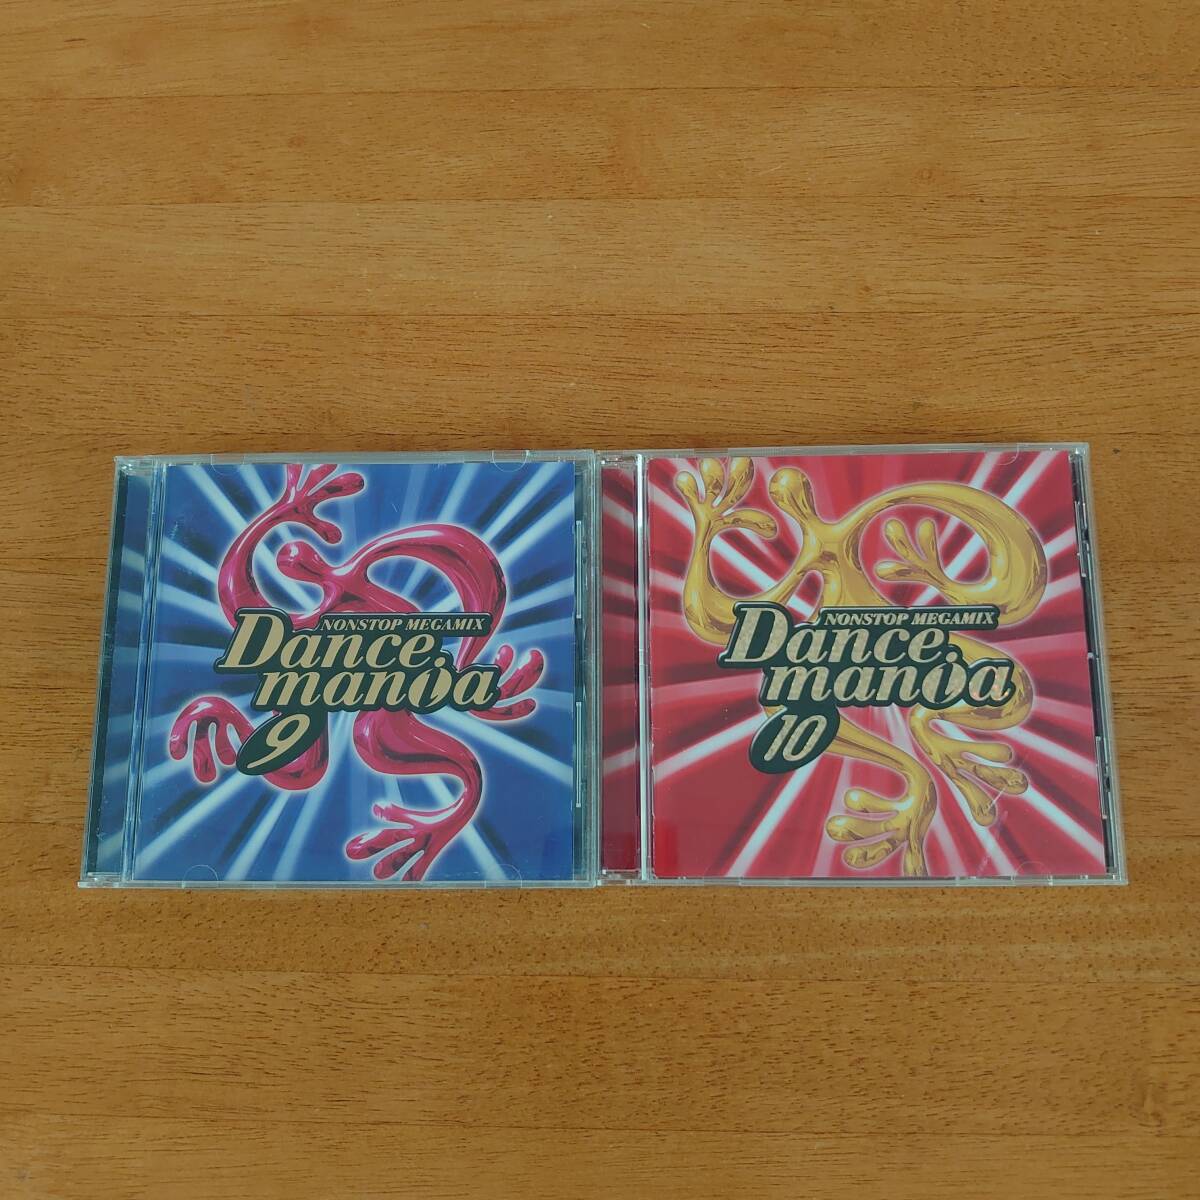 ダンスマニア Dancemania 9 / Dancemania 10 2枚セット 【CD】M4477_画像1